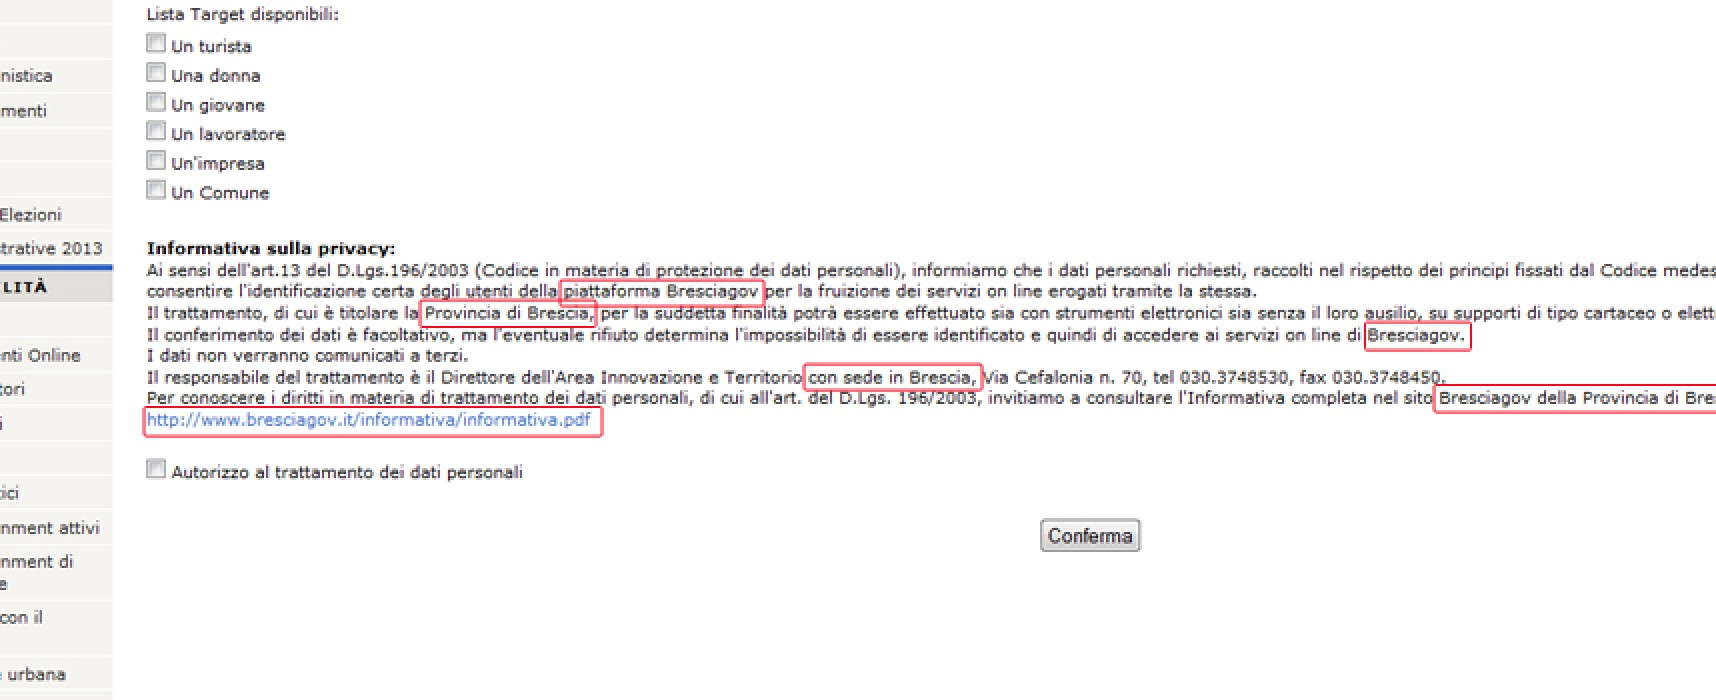 Errore sul sito web del Comune di Bisceglie? L’informativa privacy è a nome della Provincia di Brescia